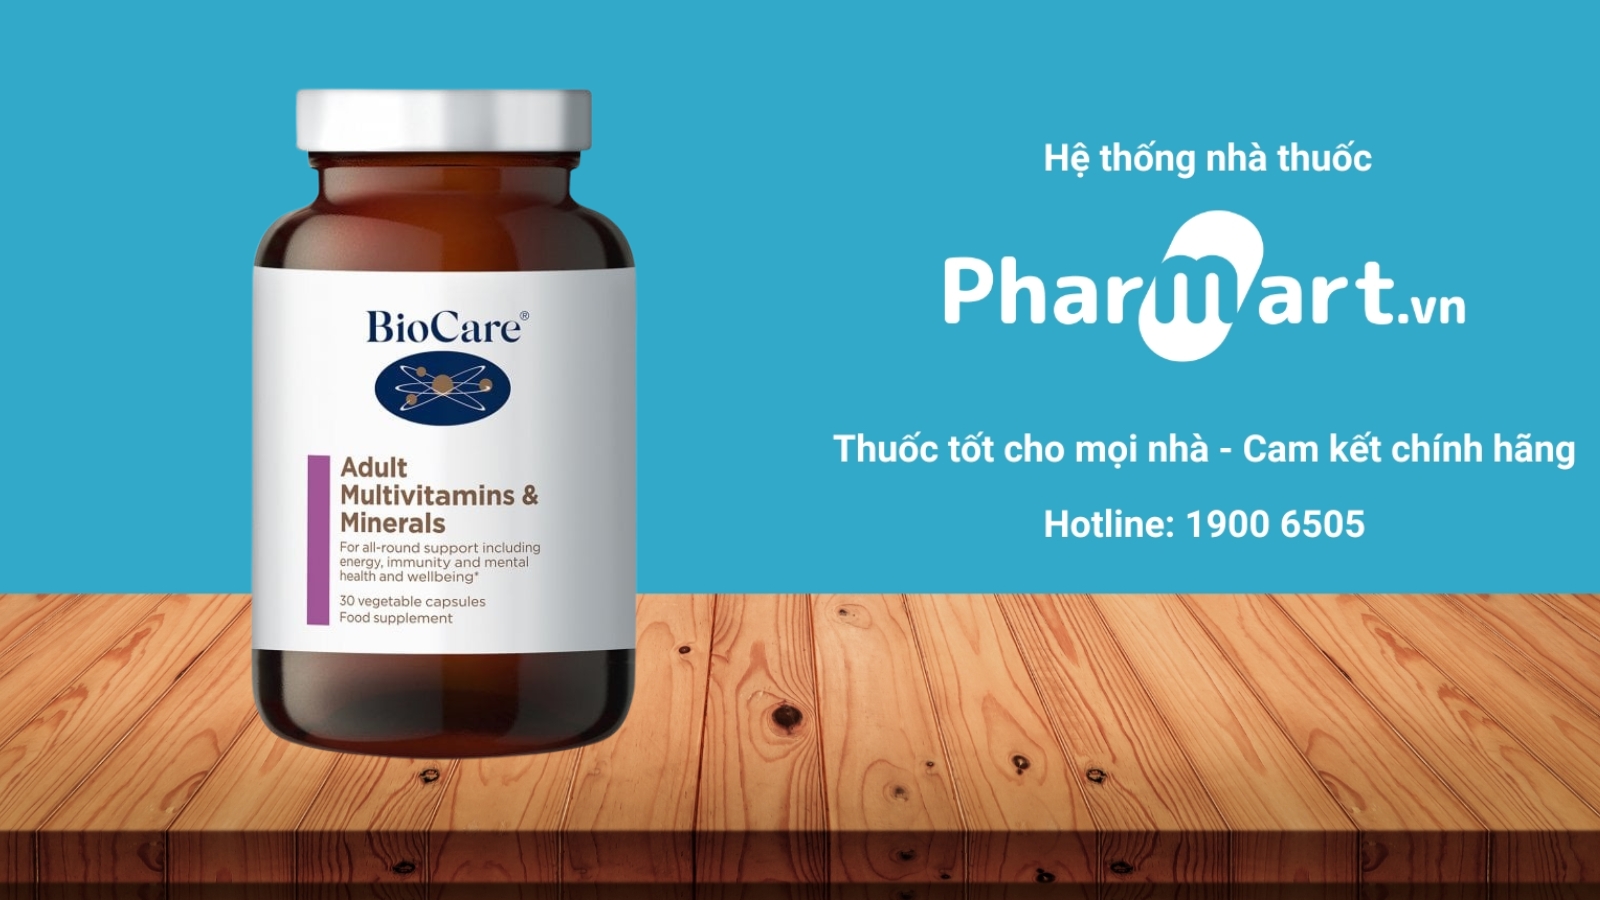 Mua ngay Biocare adult multivitamins chính hãng tại Pharmart.vn